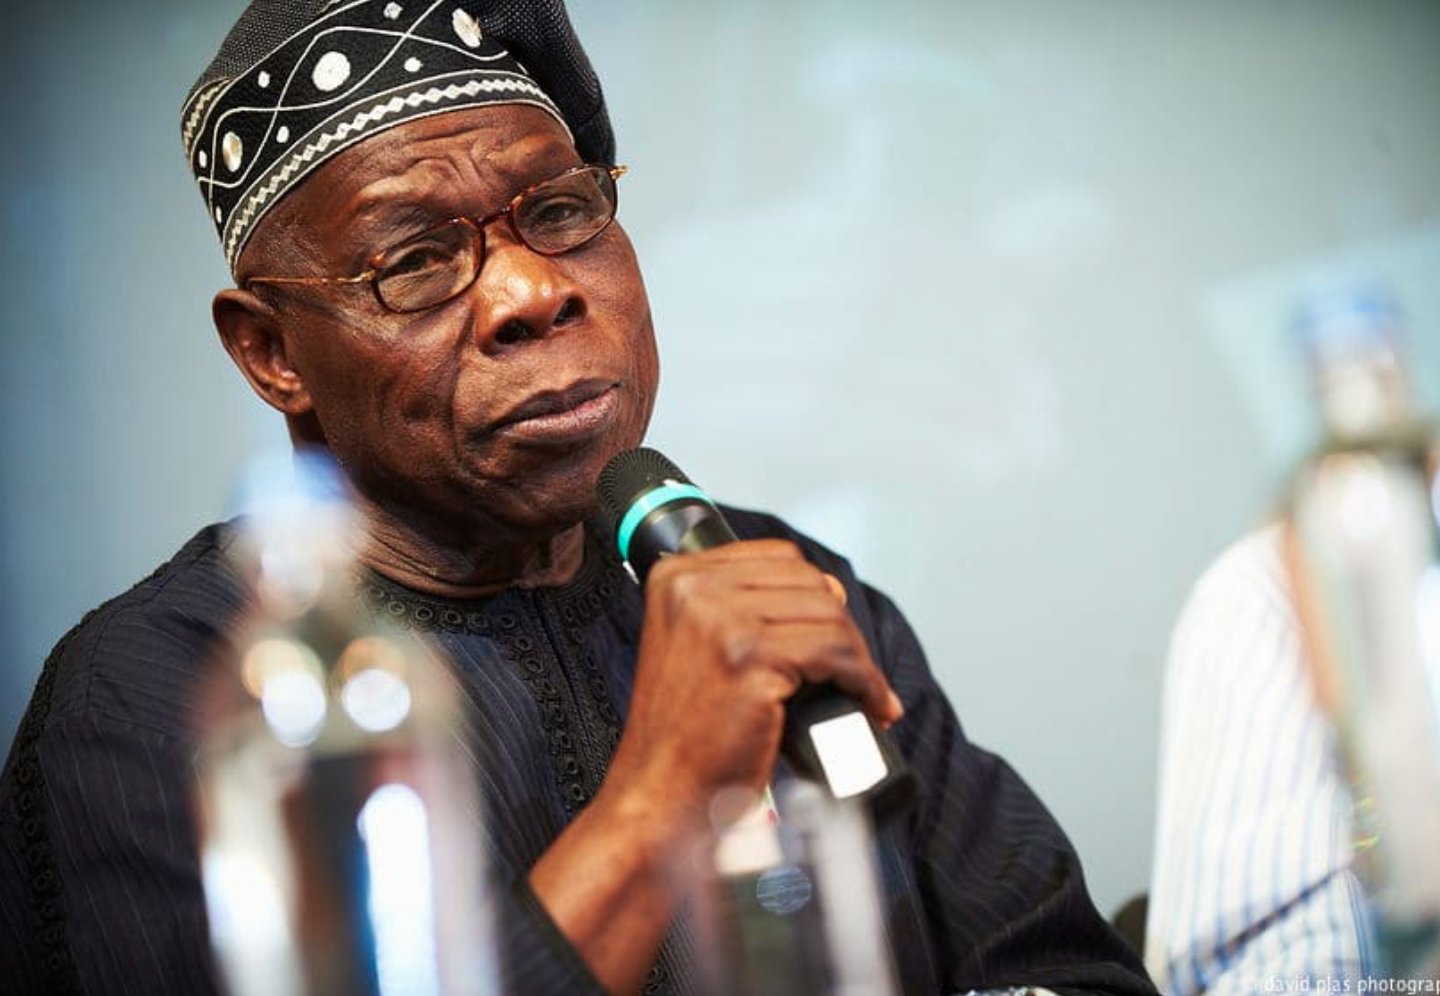 Olusegun Obasanjo, former President of Nigeria